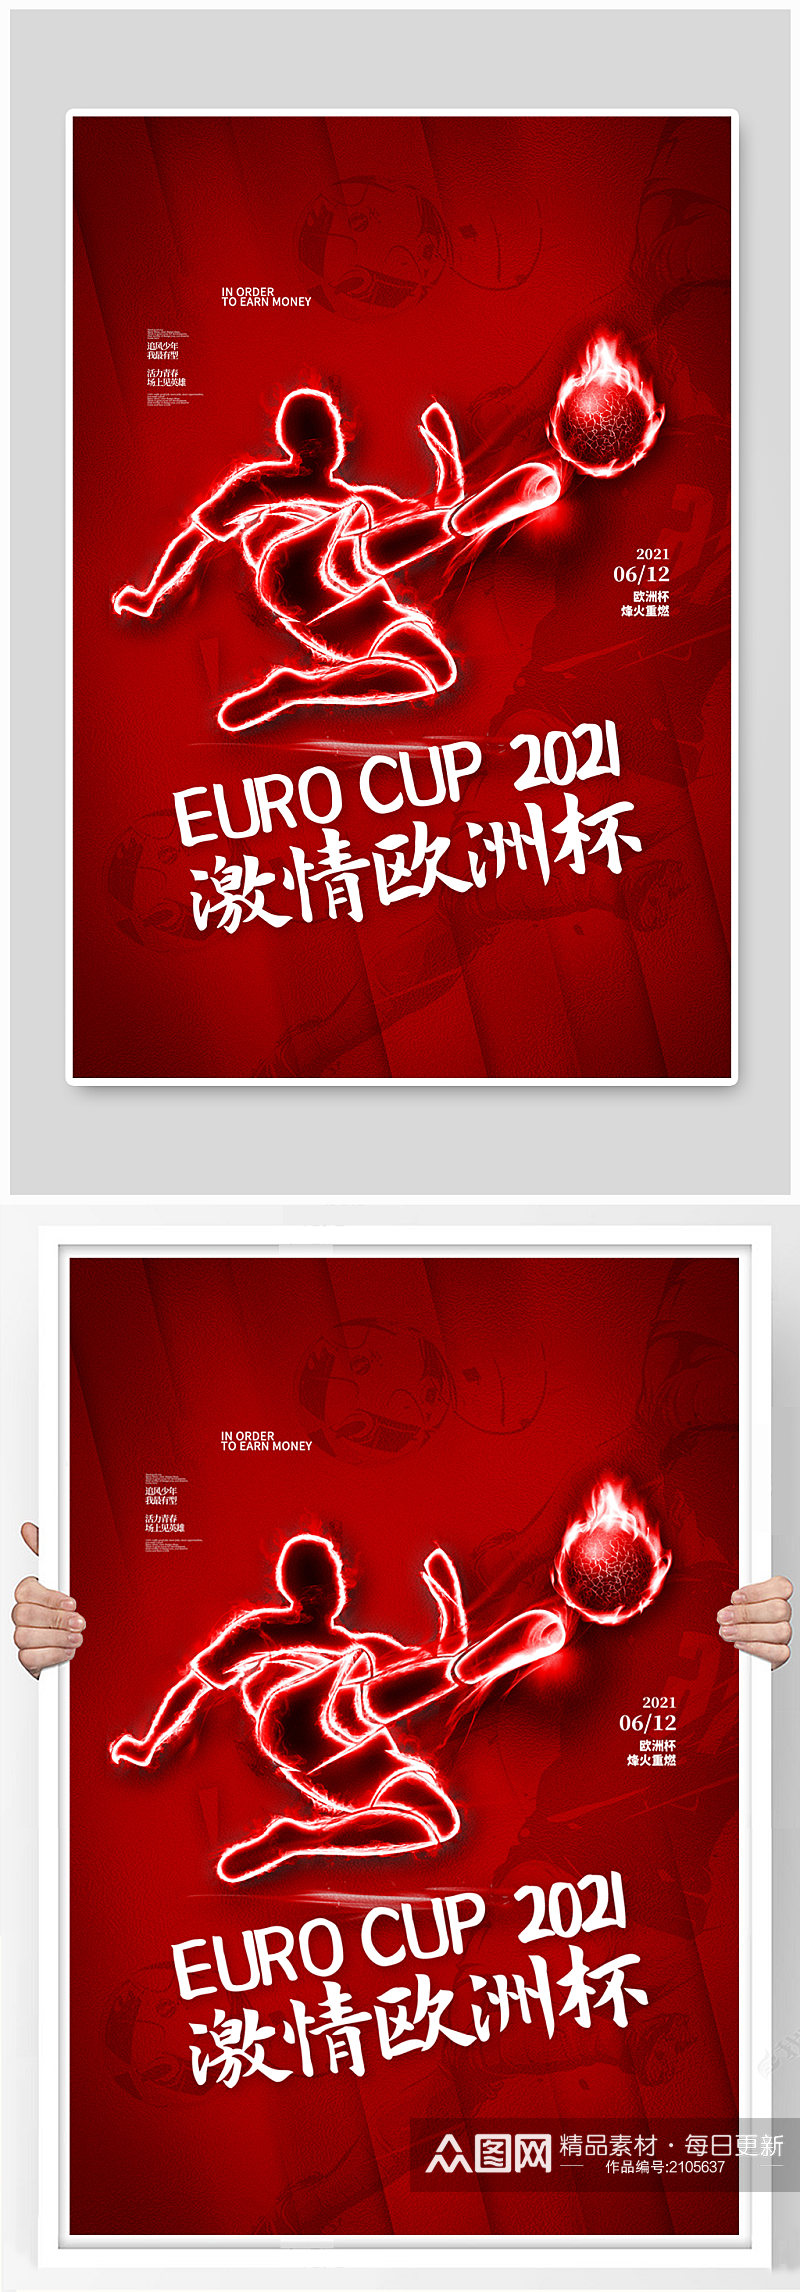 激情欧洲杯红色简约海报素材